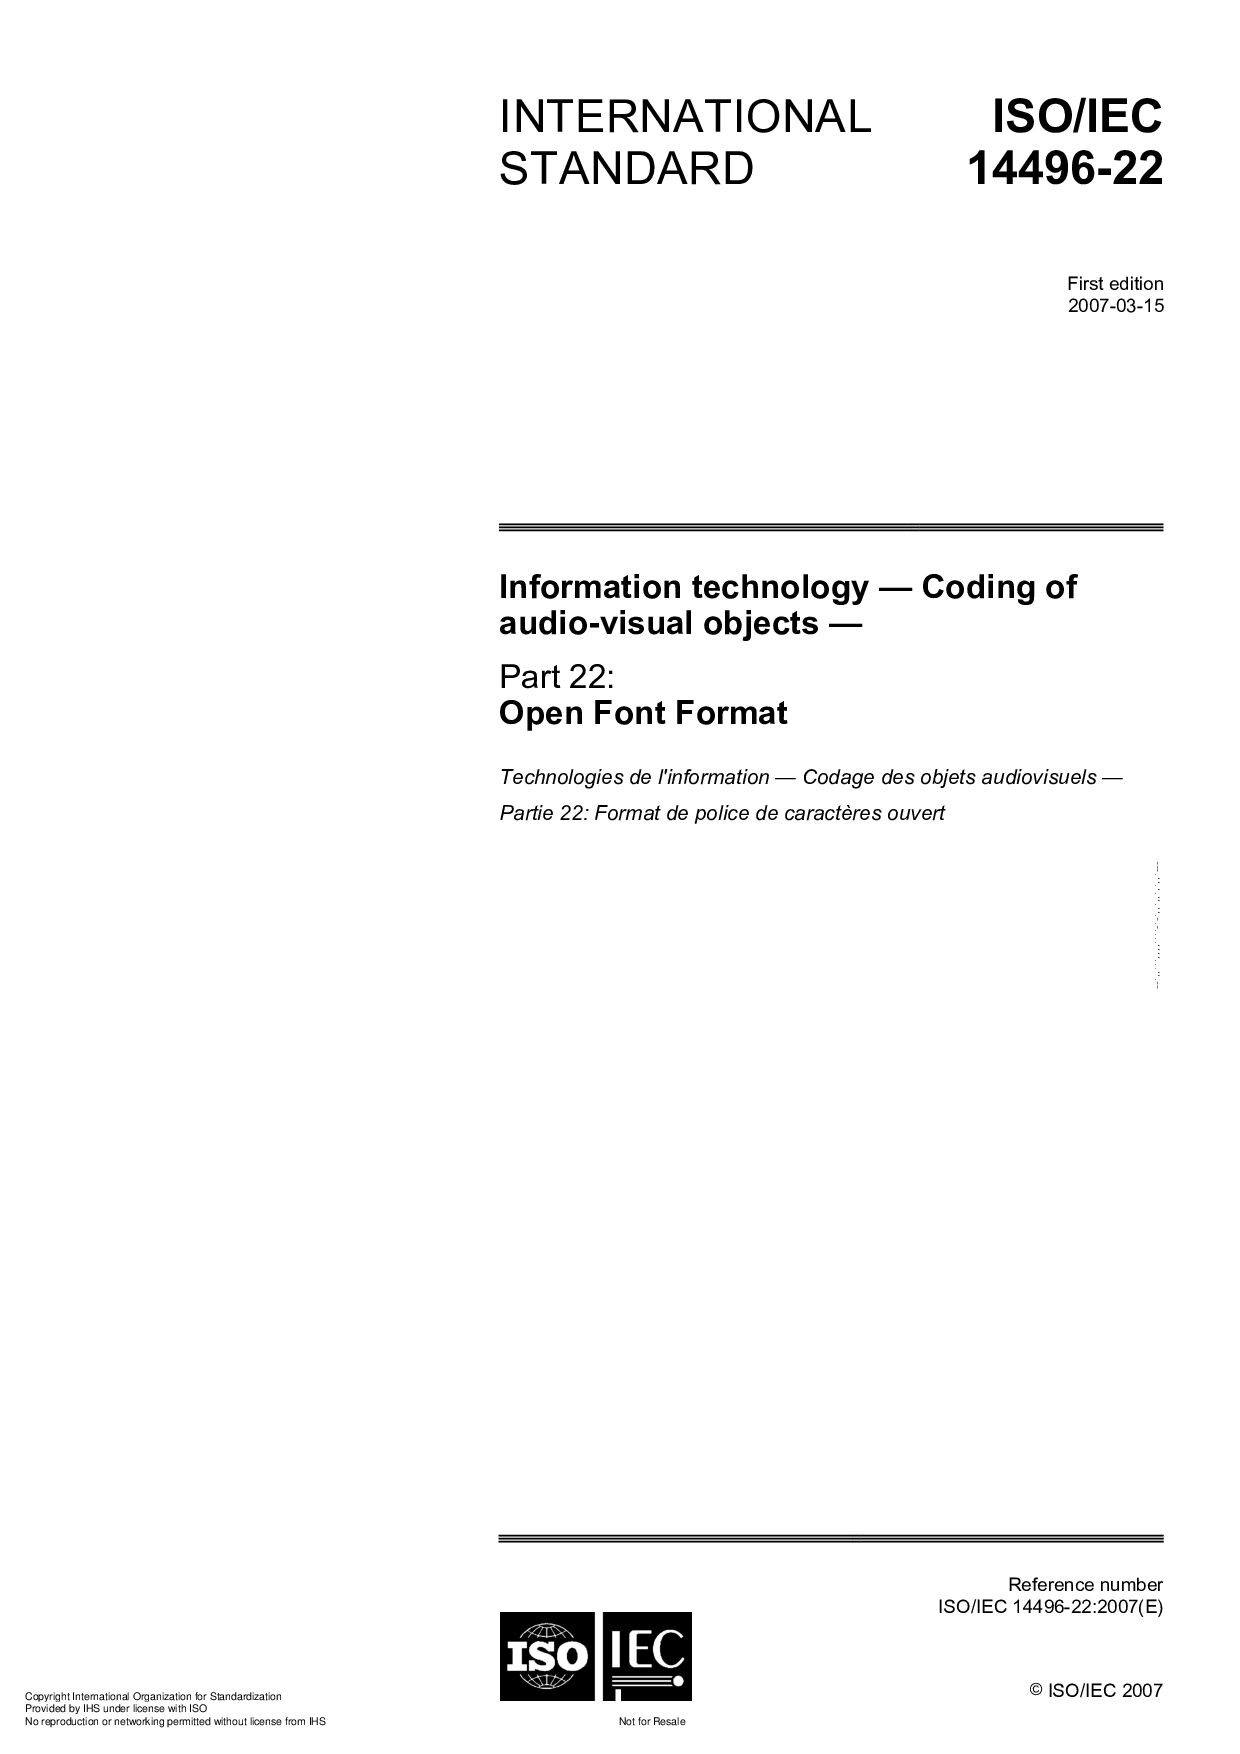 ISO/IEC 14496-22:2007封面图